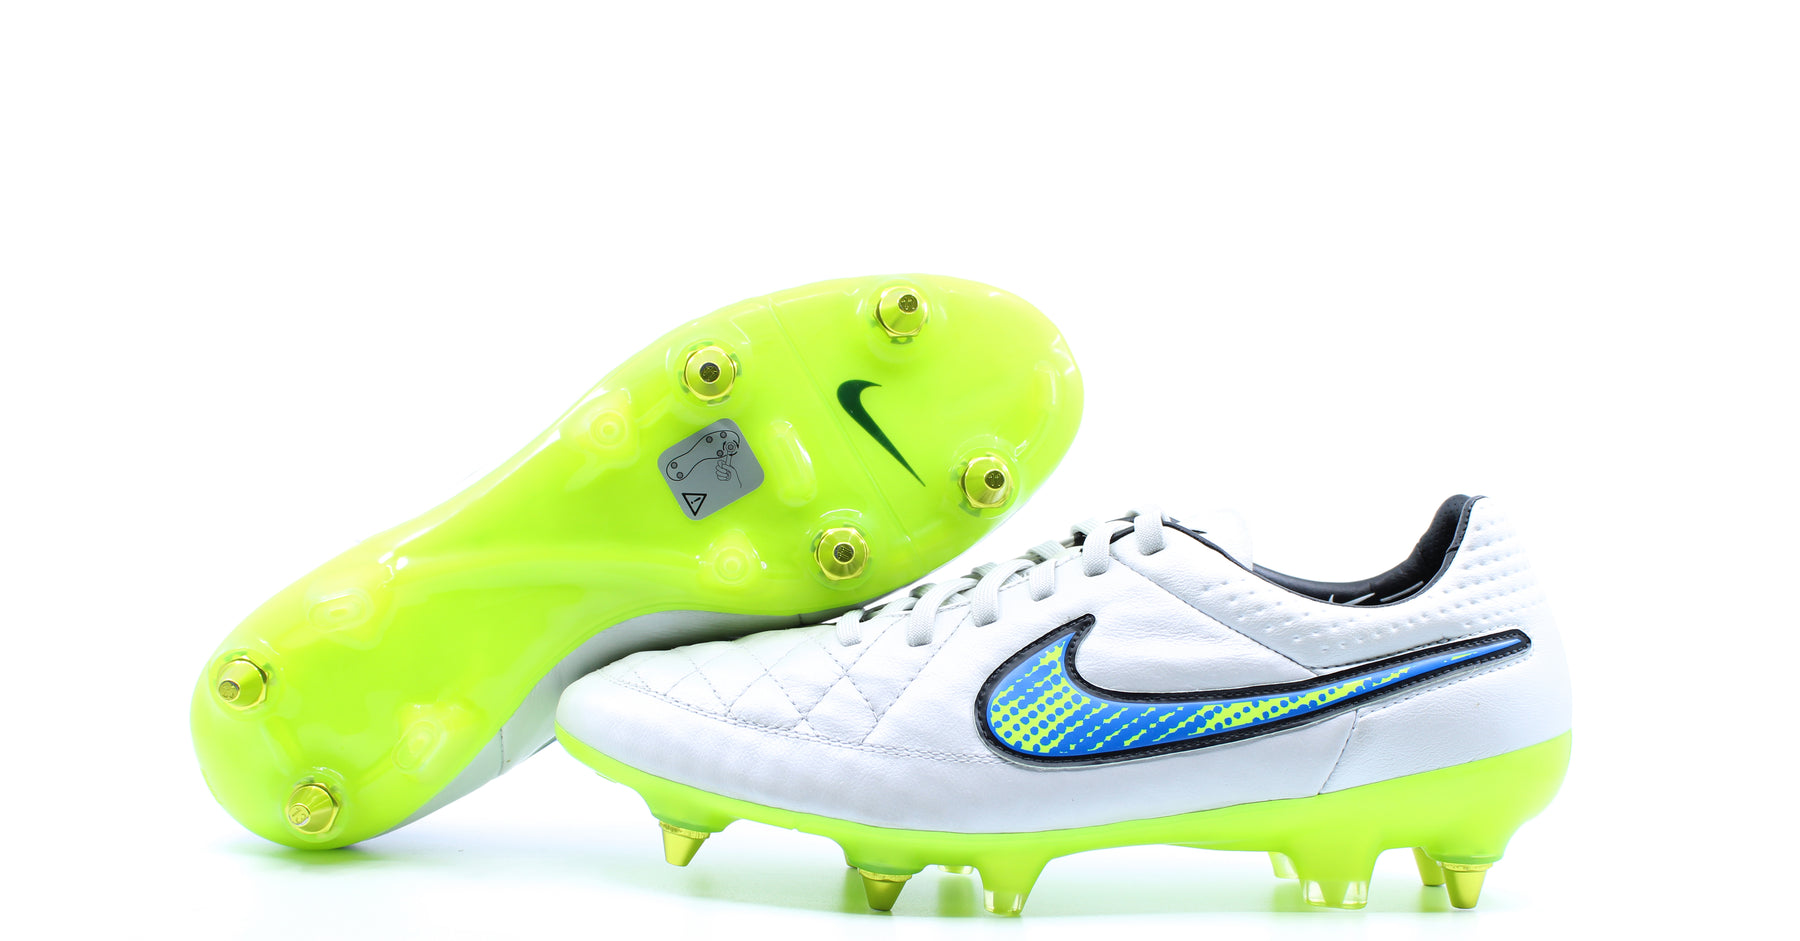 Wig Absoluut Gezichtsveld Nike Tiempo Legend 5 SG Pro White/Volt/Solar/Black (631614-175) – Retro  Soccer Cleats